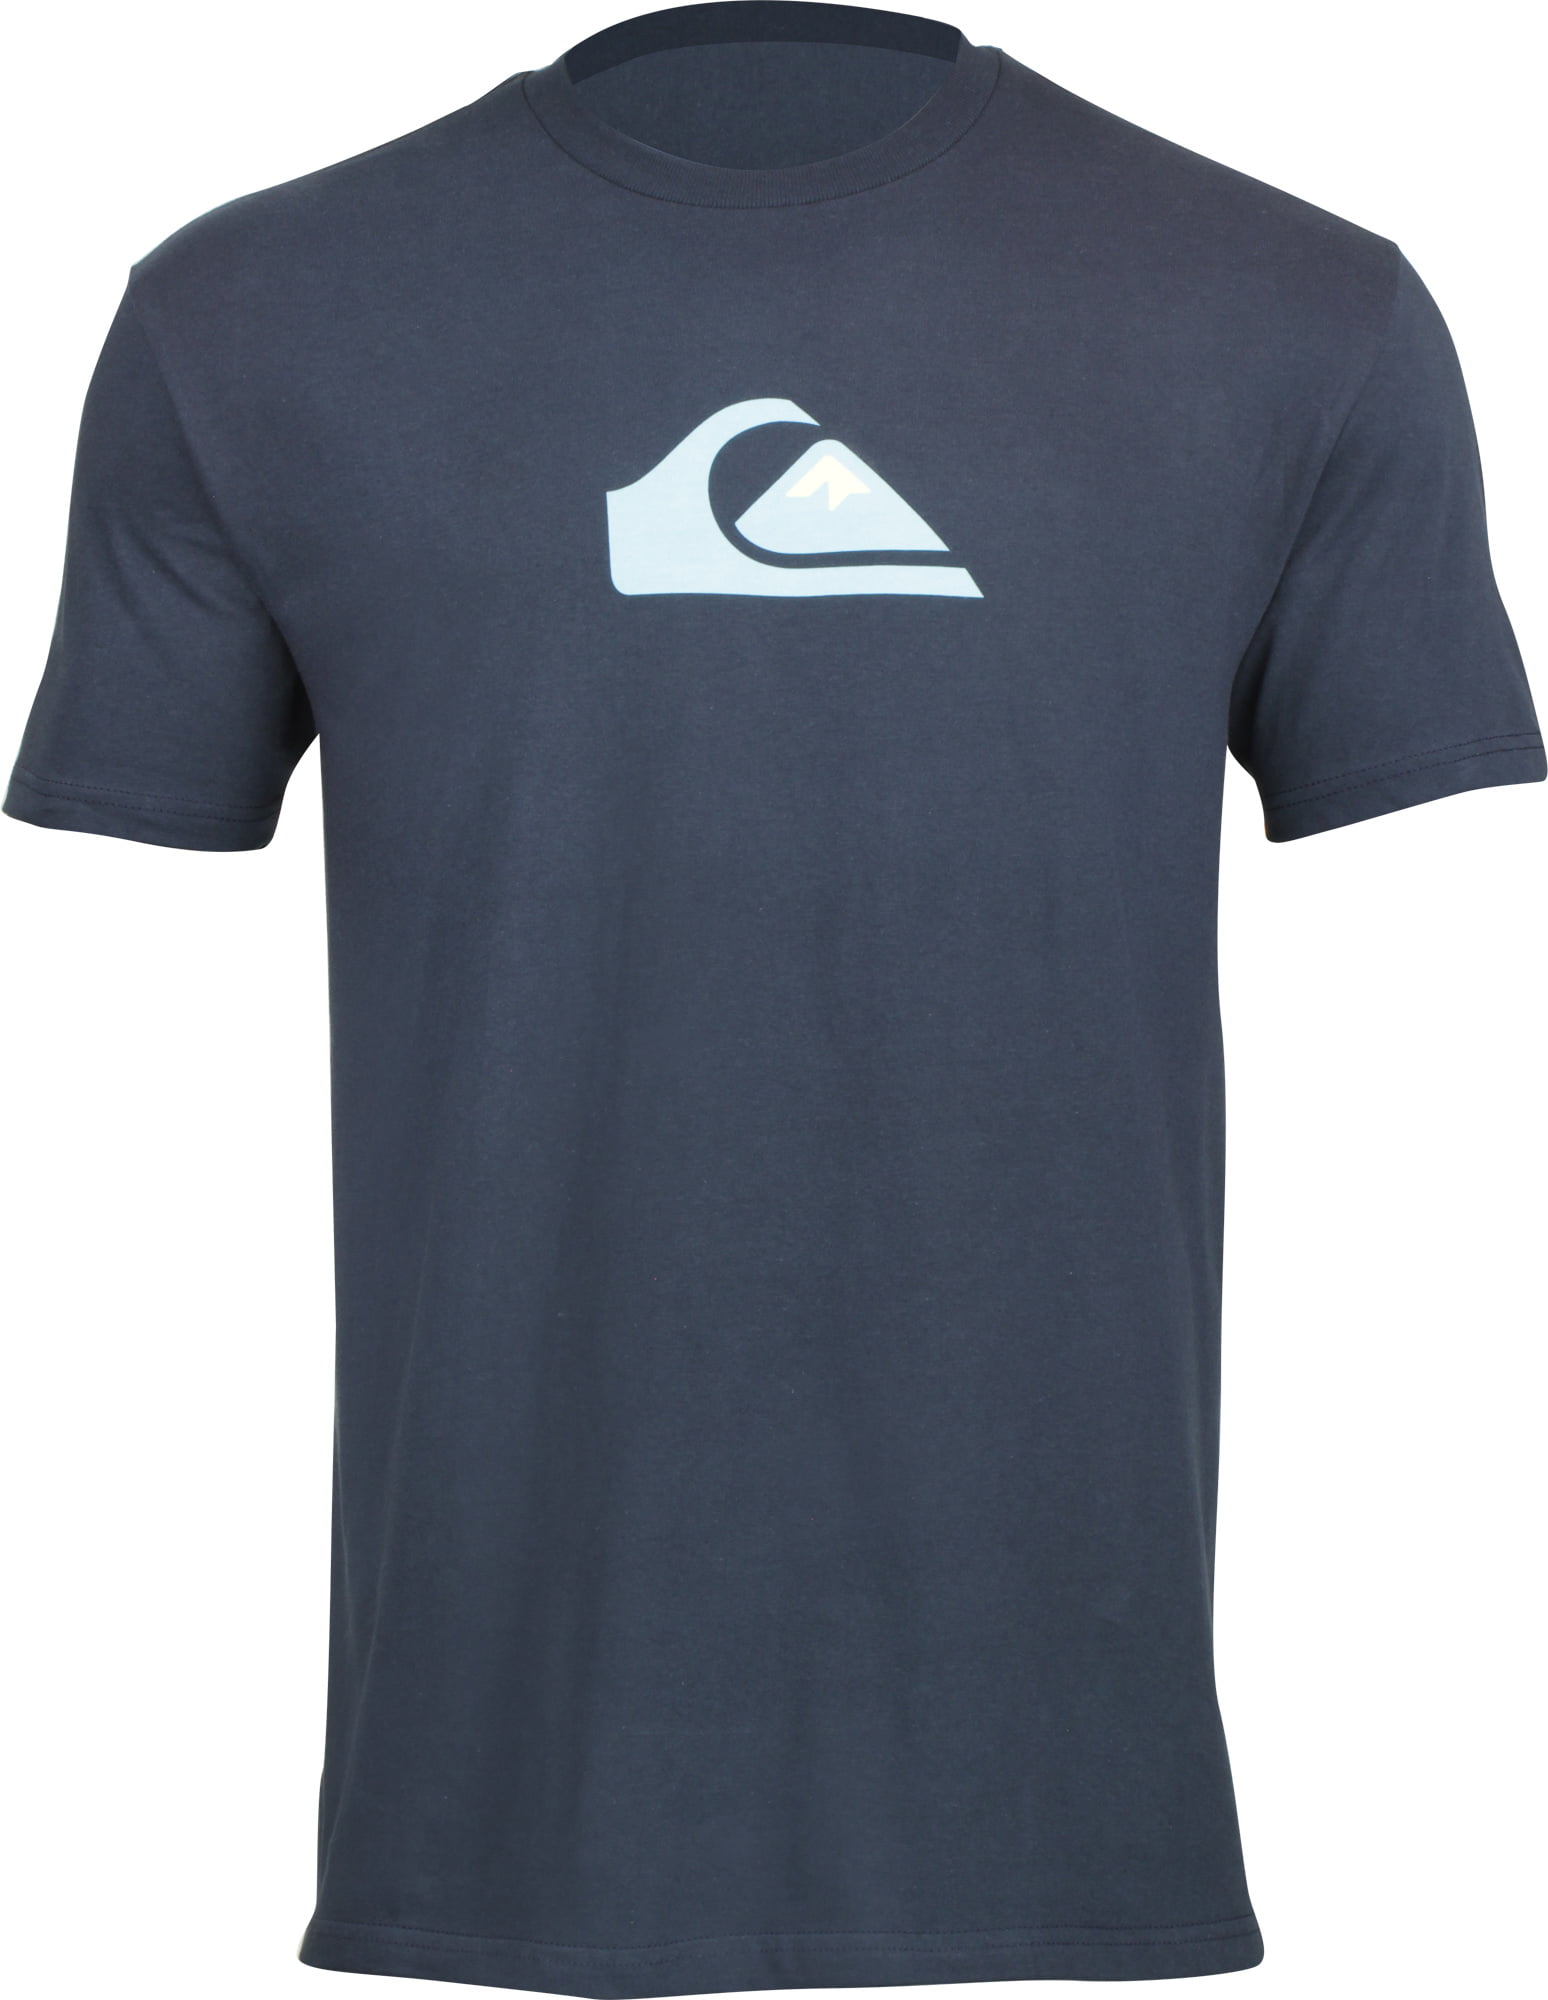 Quiksilver Mens Comp Logo T-Shirt - Sky Captain Blue - Large - Walmart.com